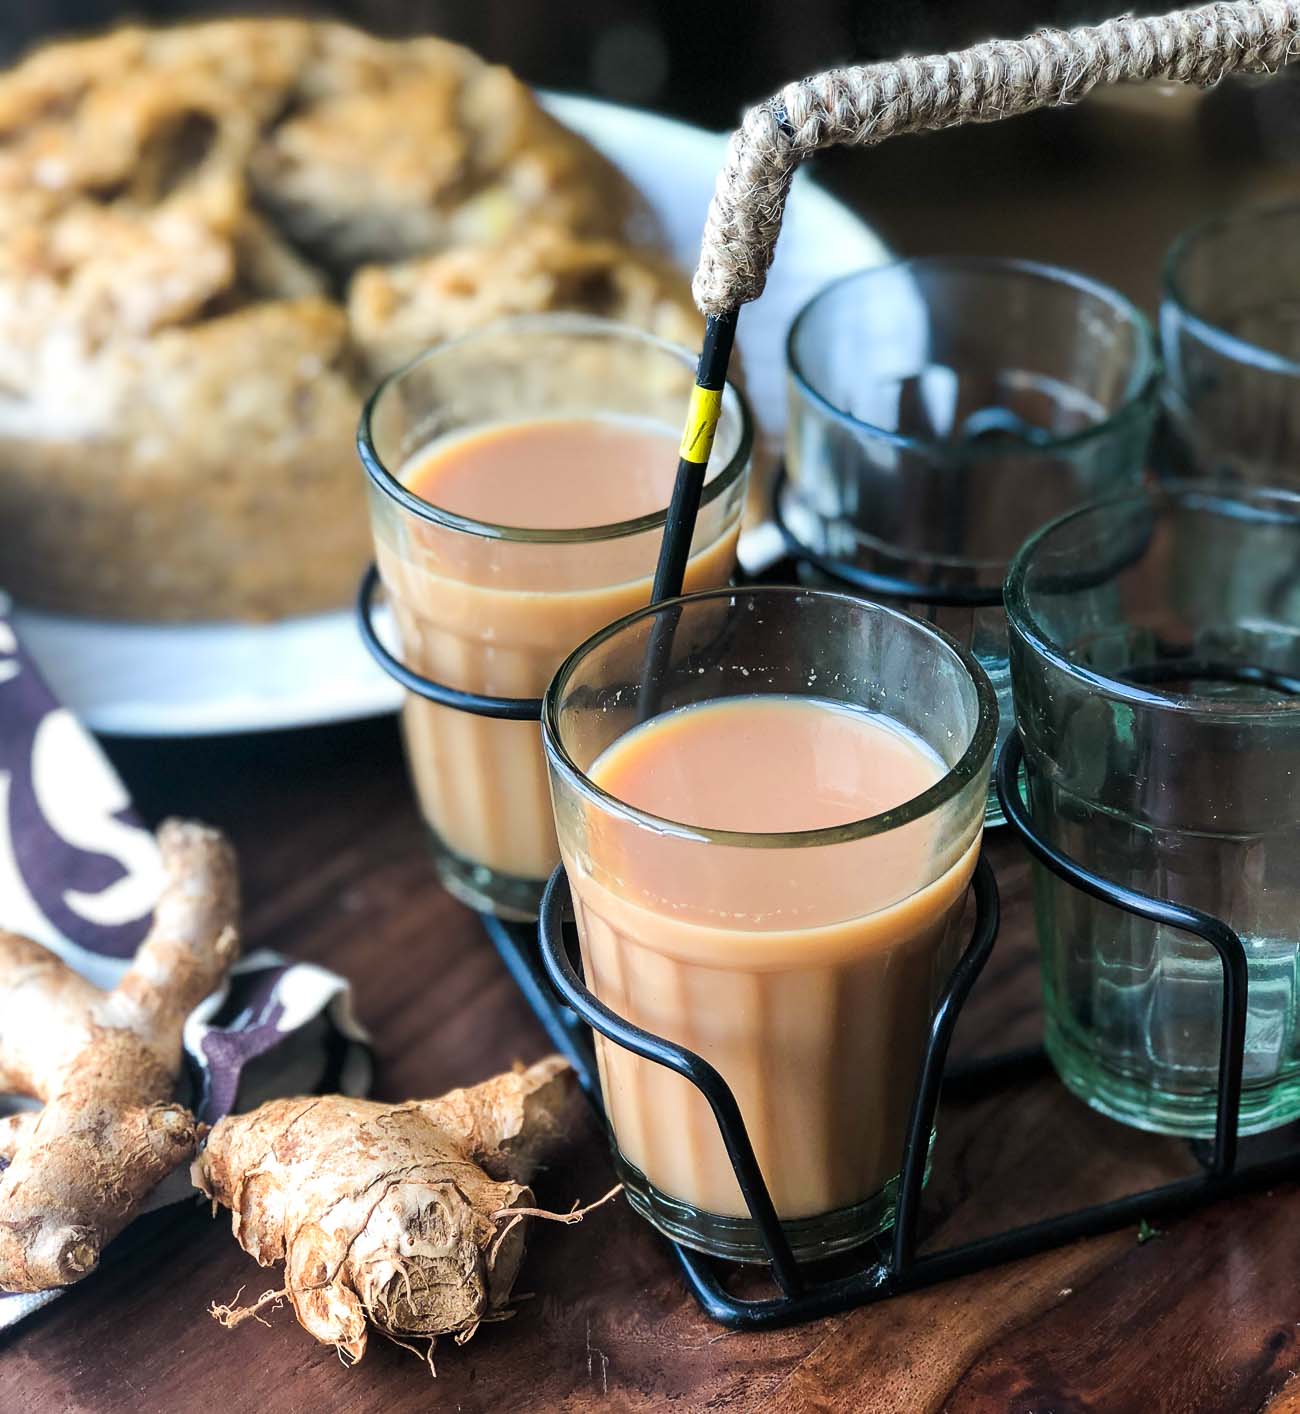 अदरक चाय रेसिपी - Adrak Chai Recipe by Archana's Kitchen